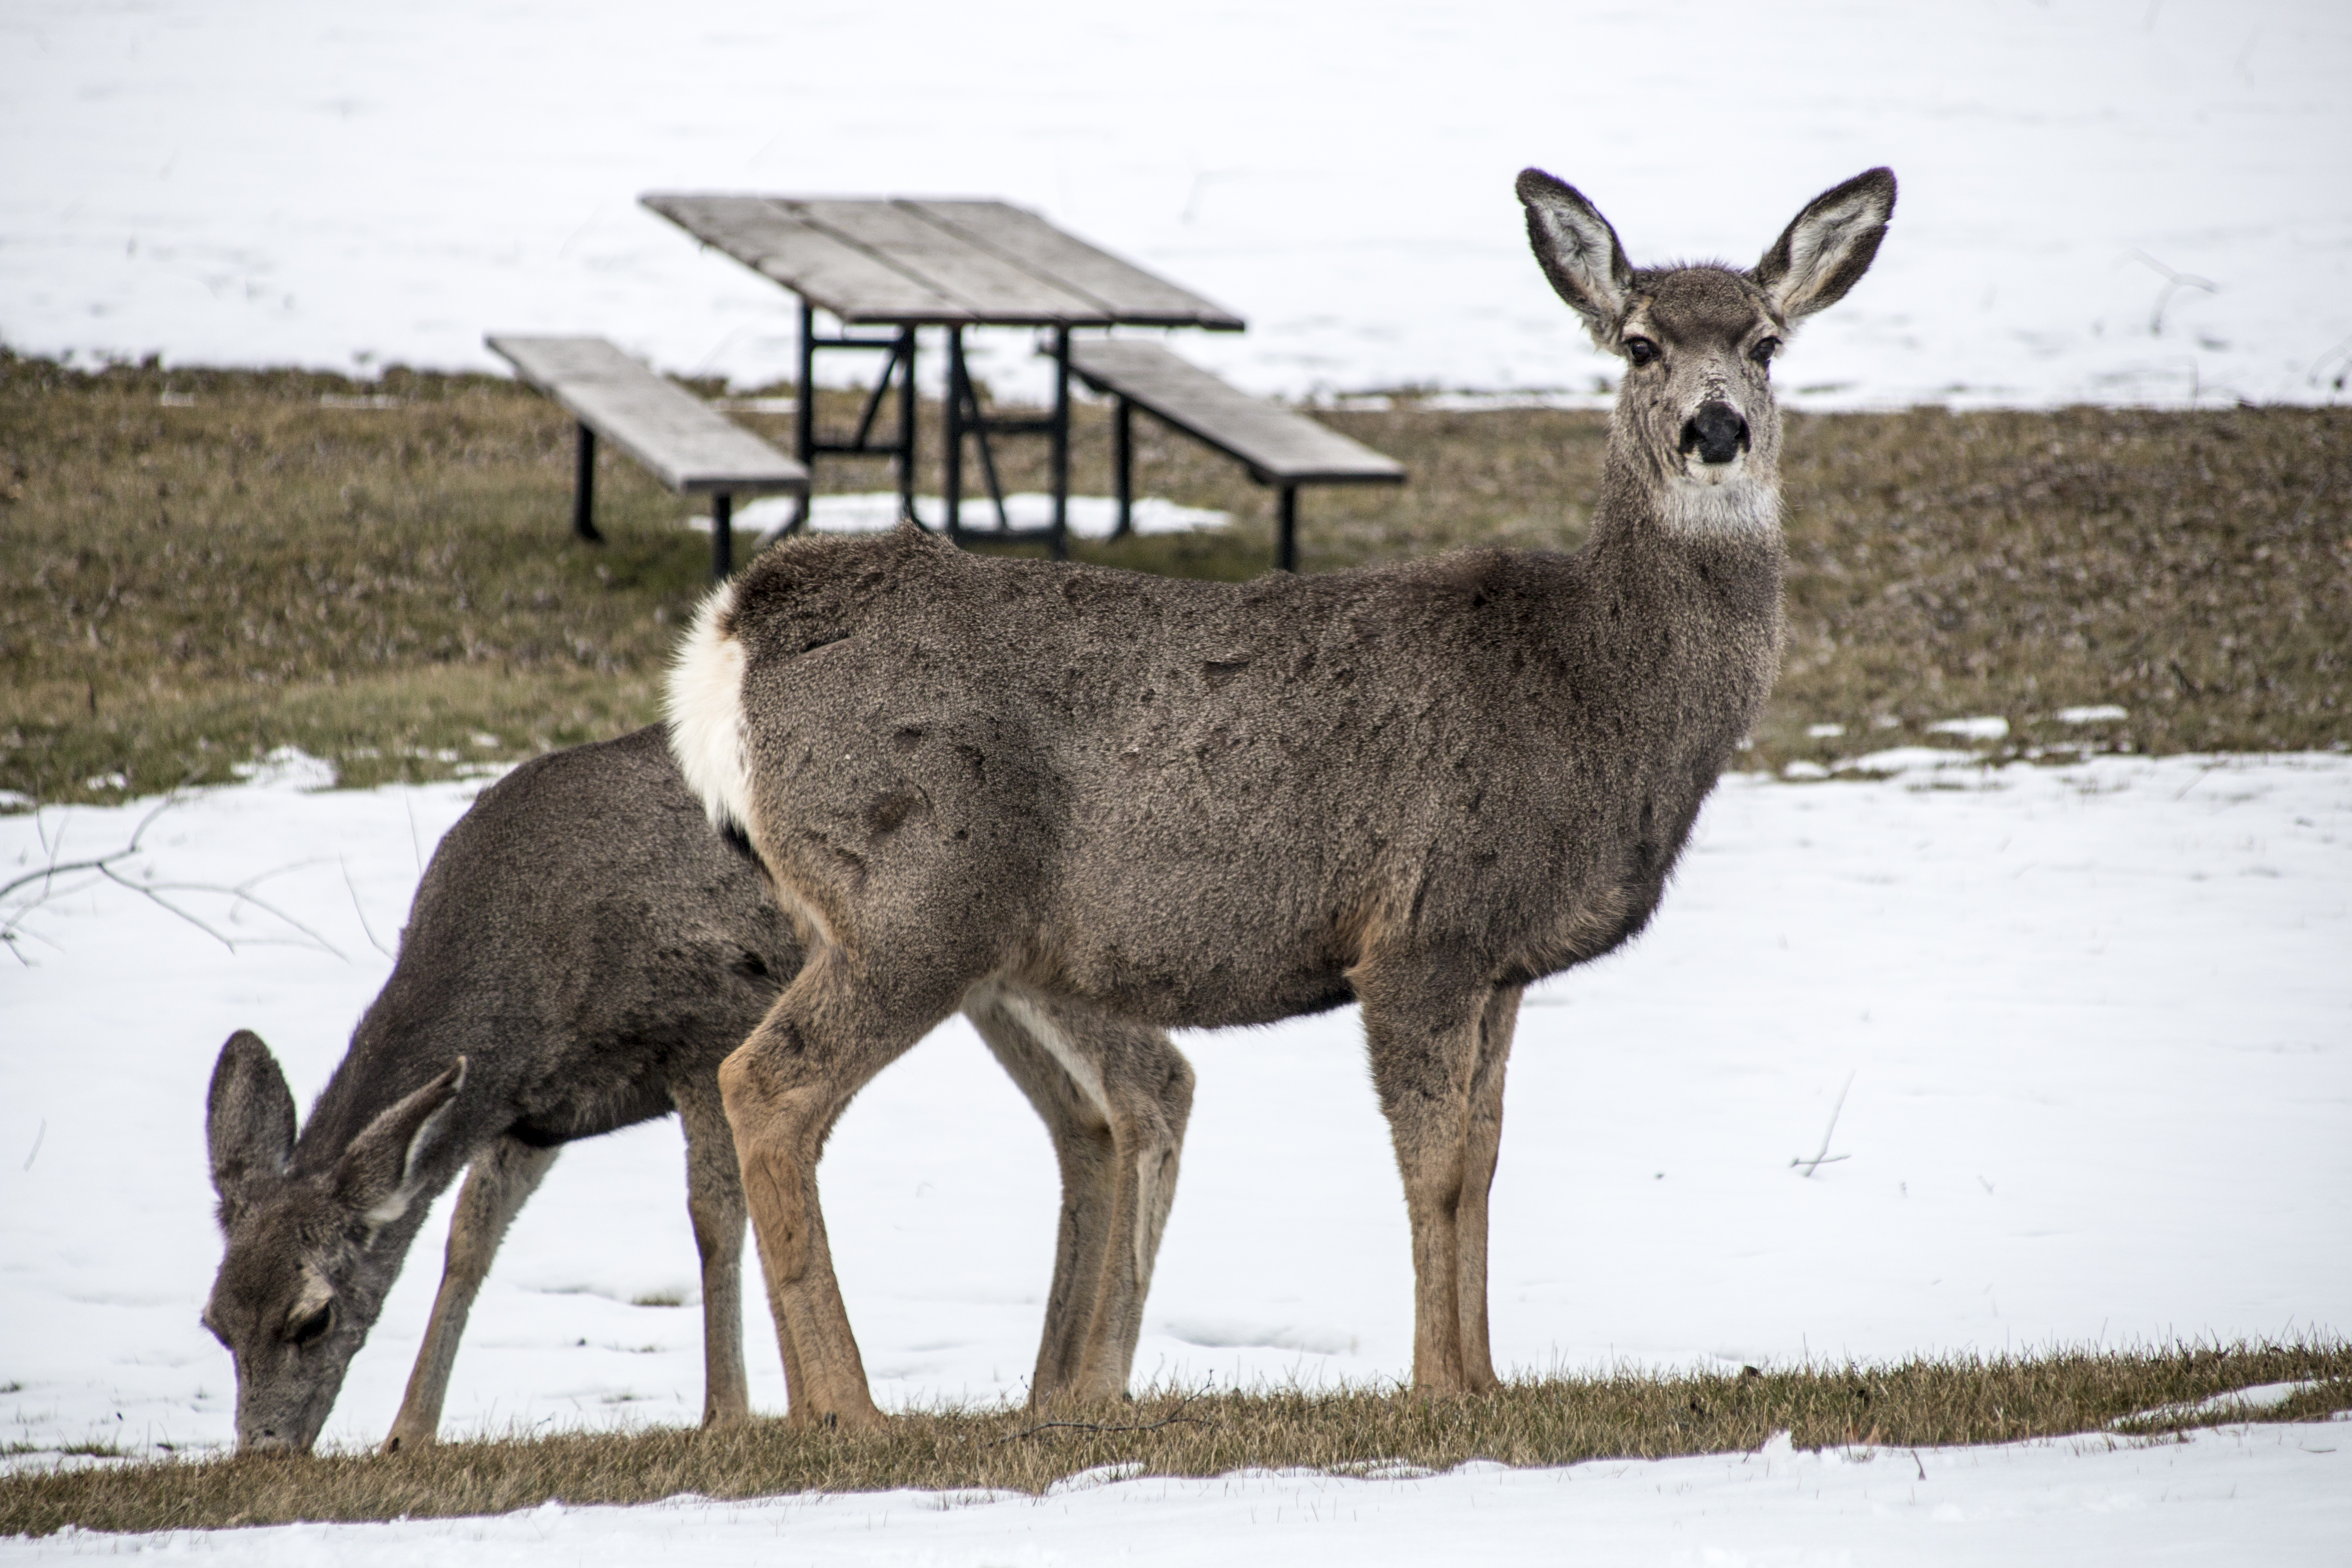 Deer in snow, eastern oregon photo